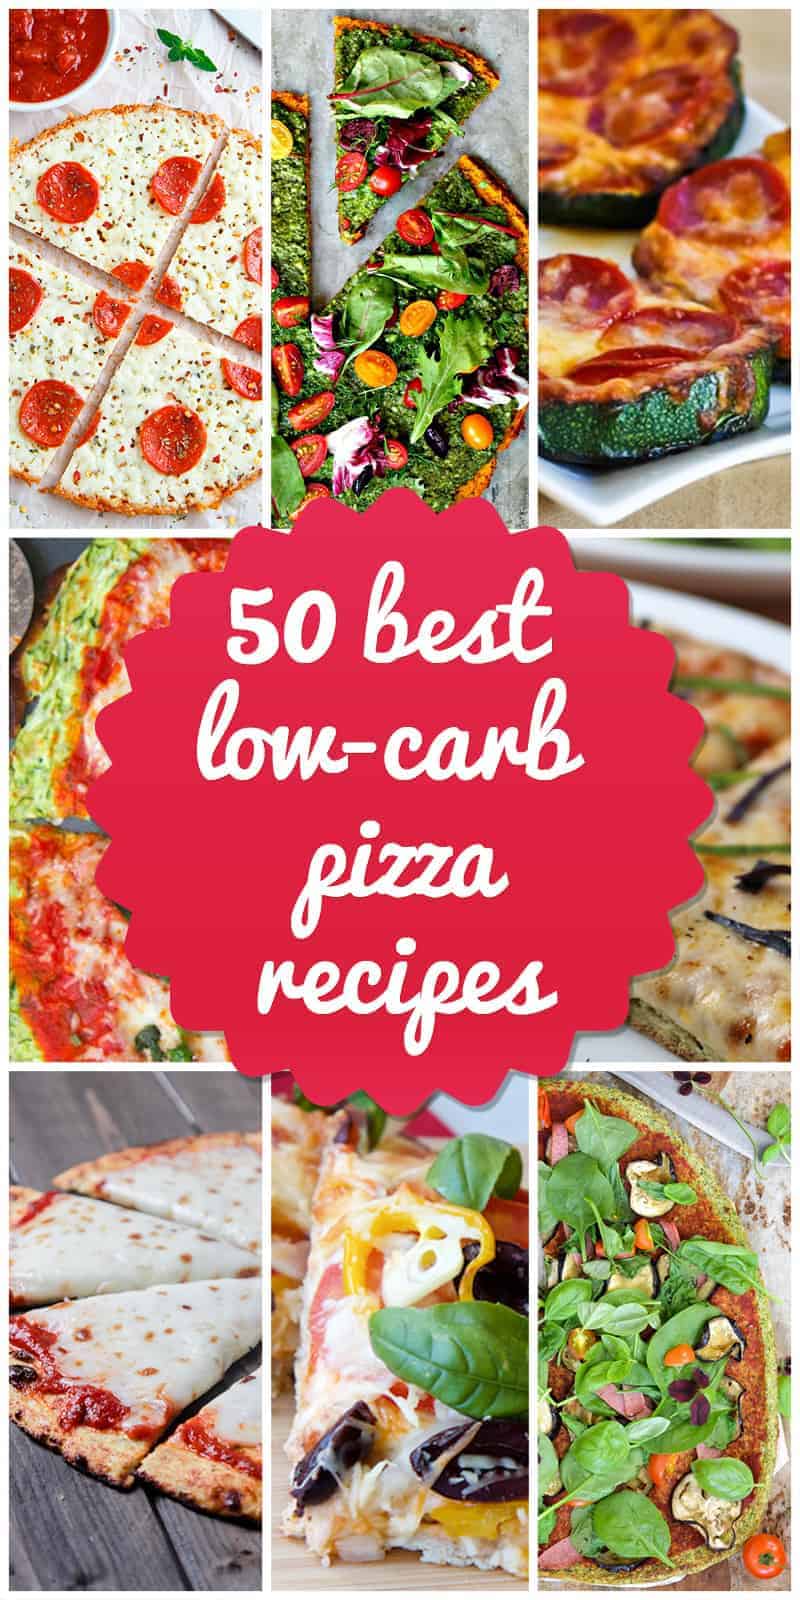 low-carb pizza recipes